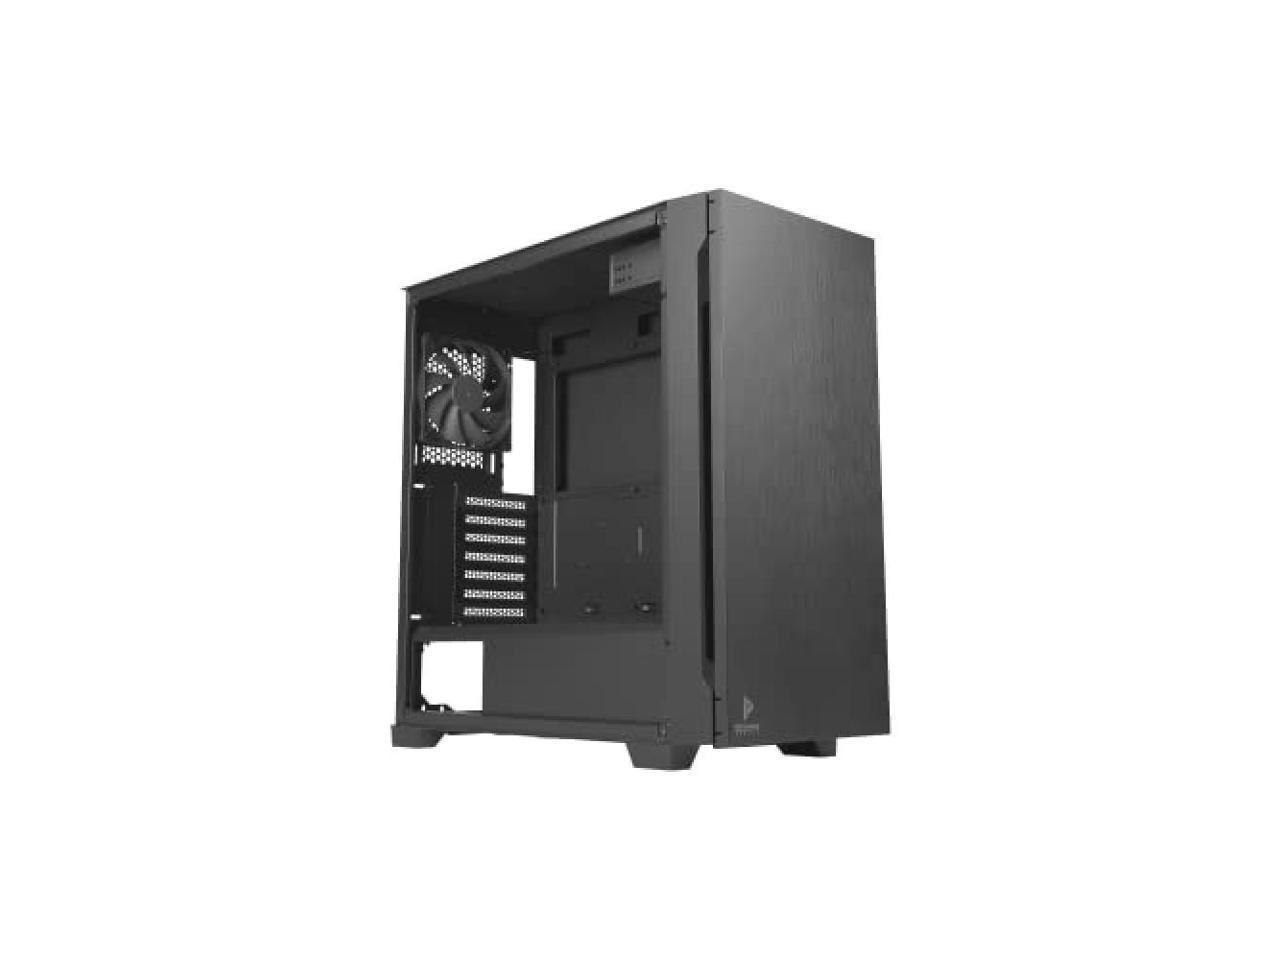 Antec Soundproof Panel Quiet Middle Tower PC Case P10C